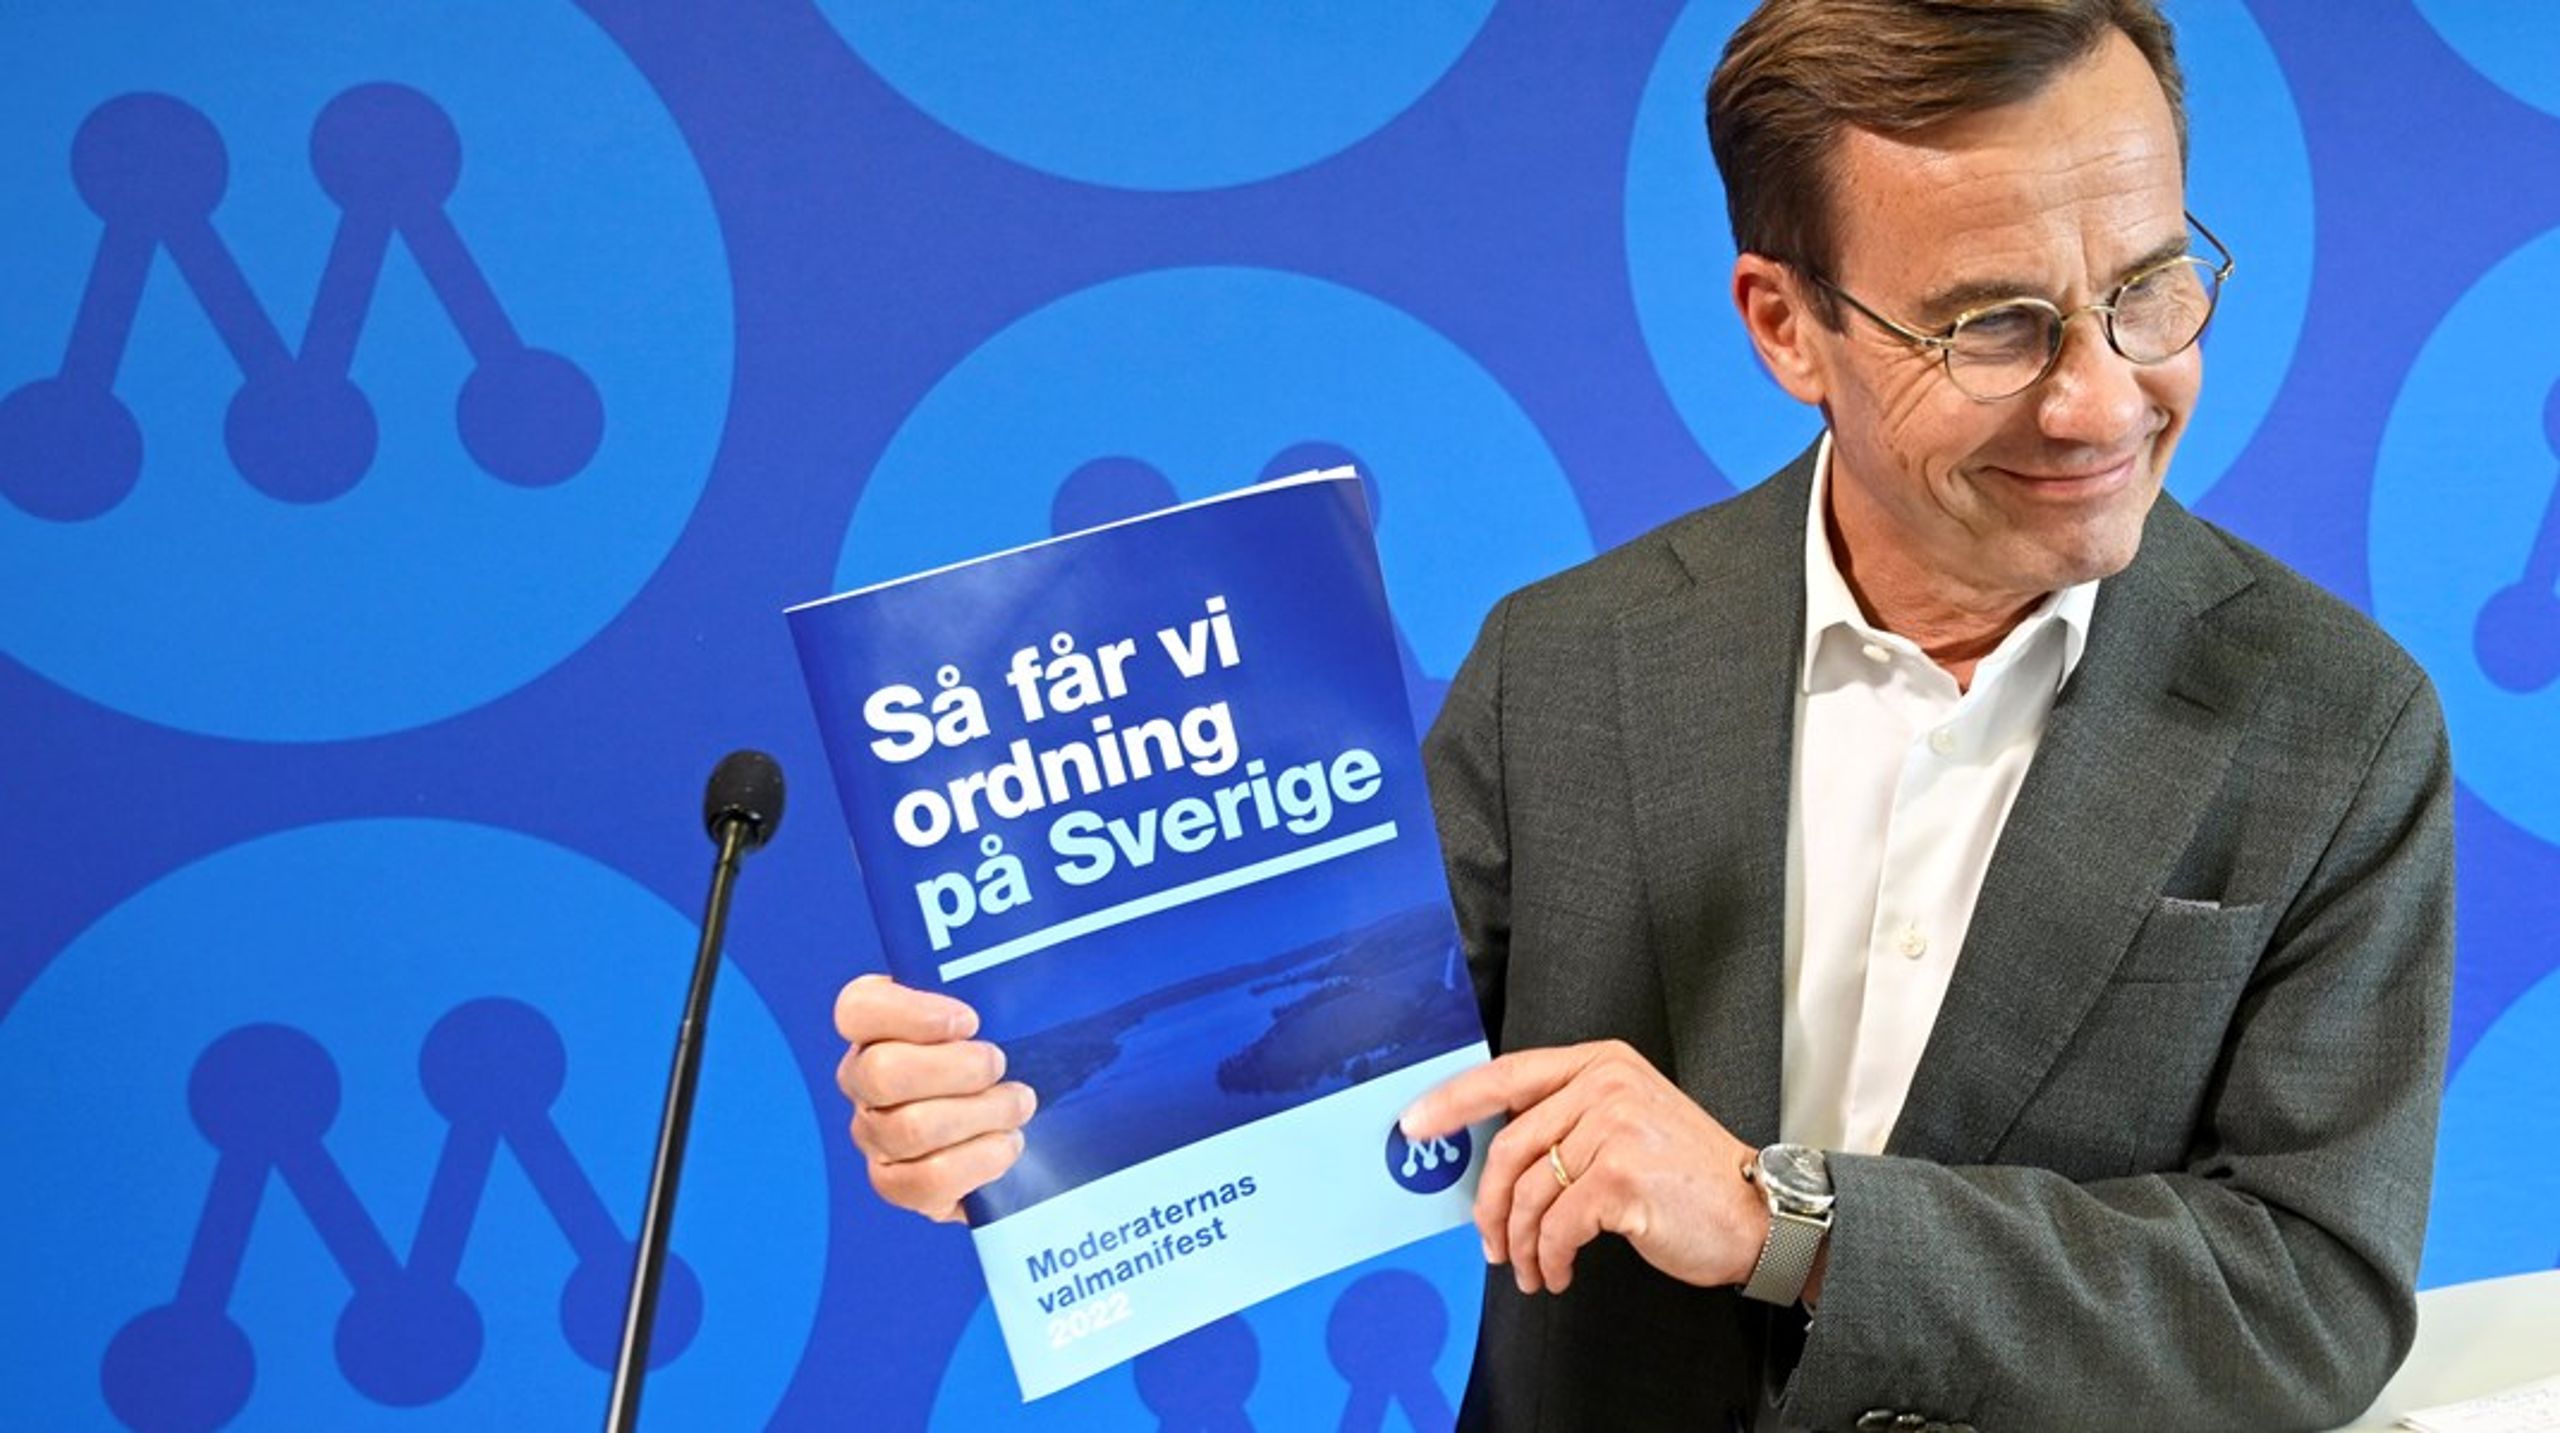 Sist av alla riksdagspartier presenterade Moderaterna sitt valmanifest under pressträff av partiledaren&nbsp;Ulf Kristersson.&nbsp;